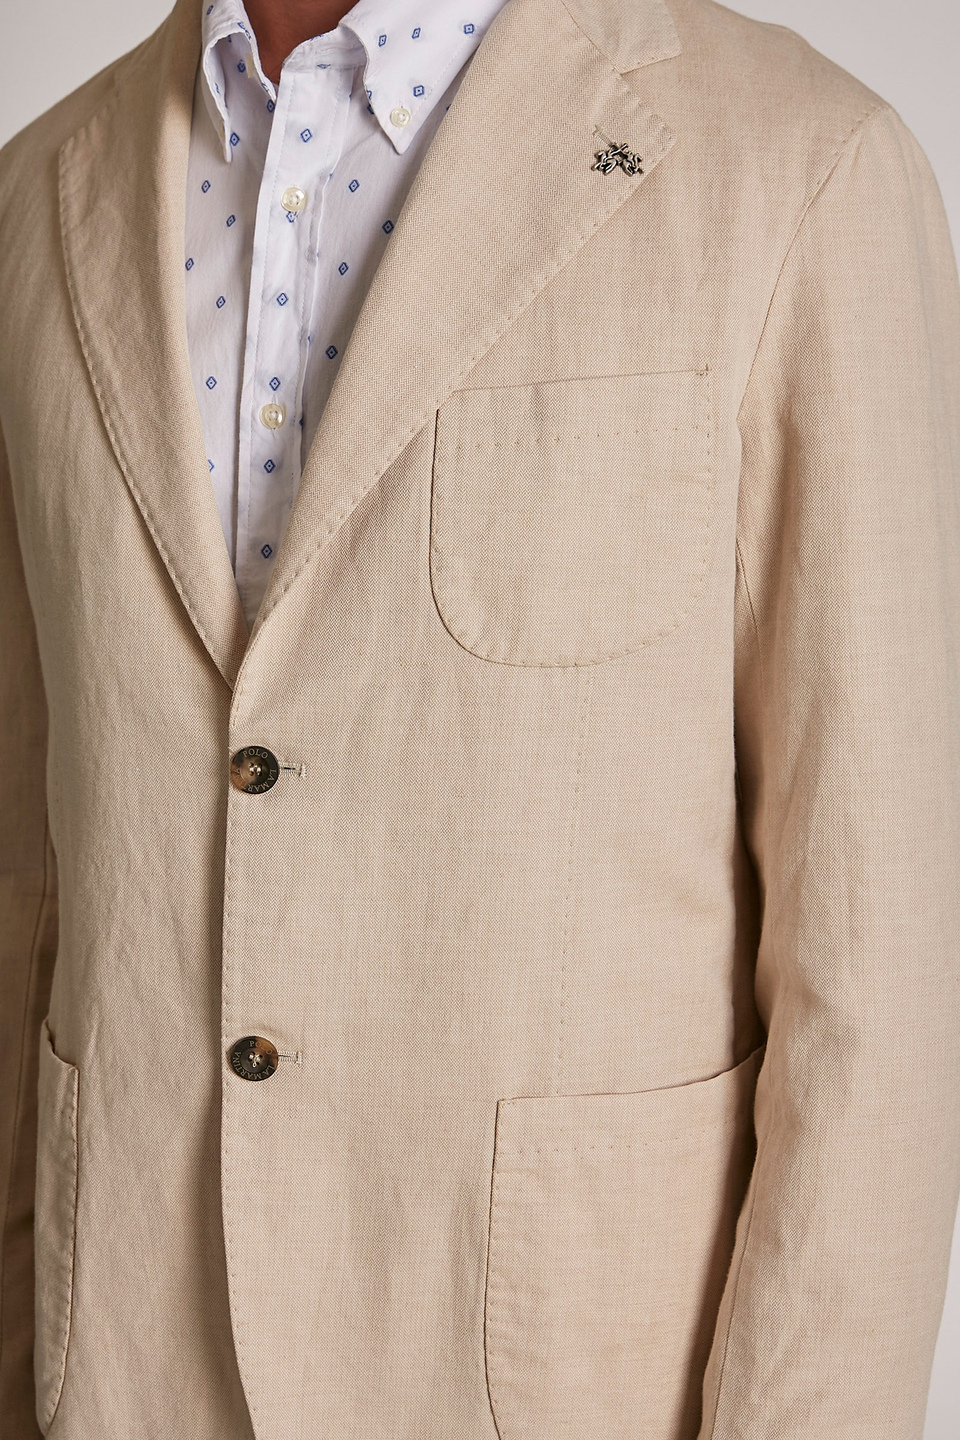 Giacca da uomo in cotone misto lino modello blazer regular fit | La Martina - Official Online Shop